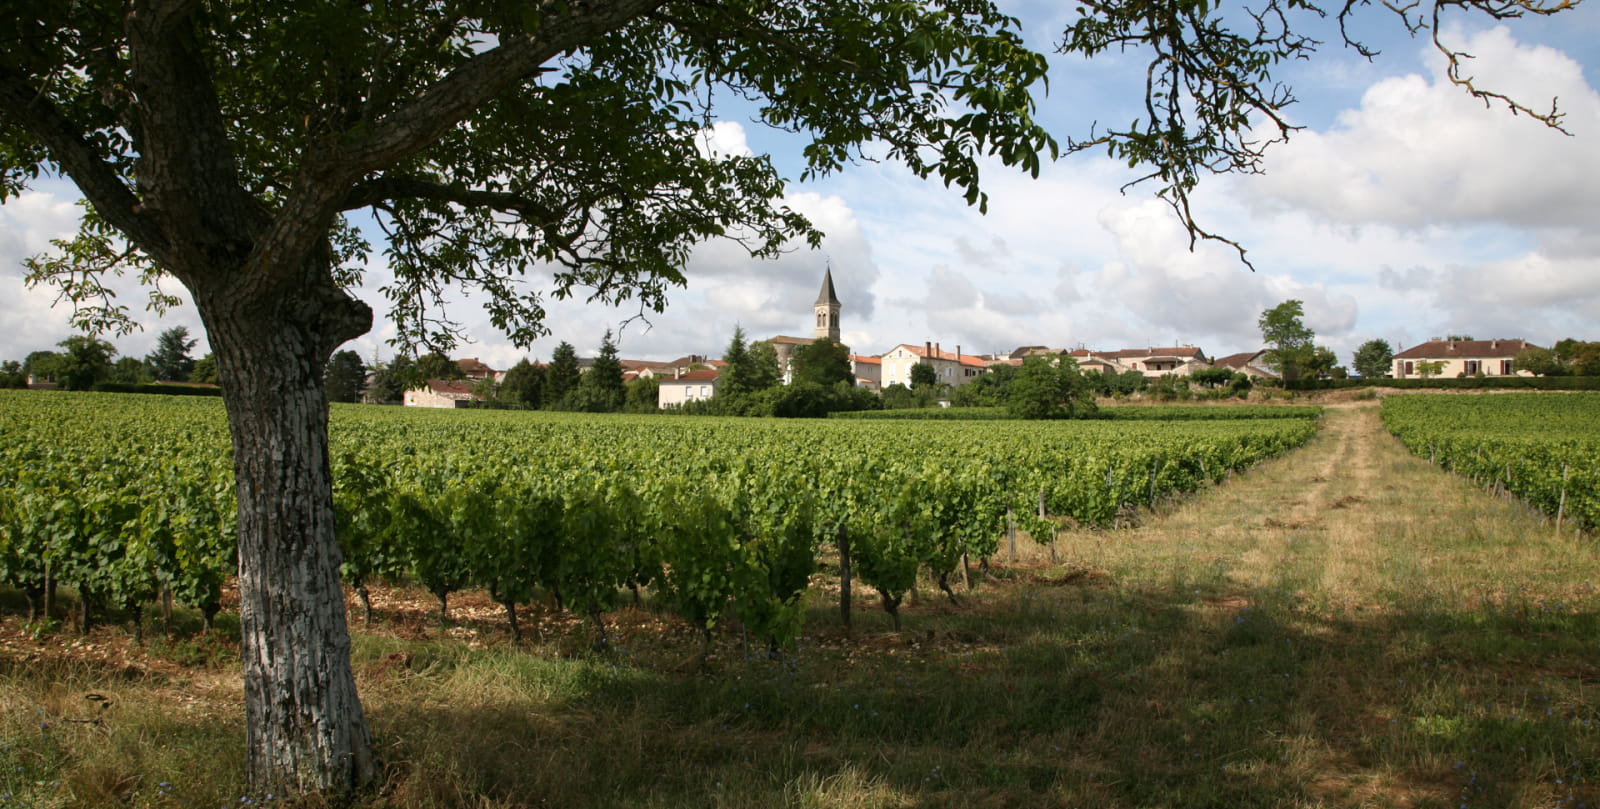 Sauzet - View of the Village